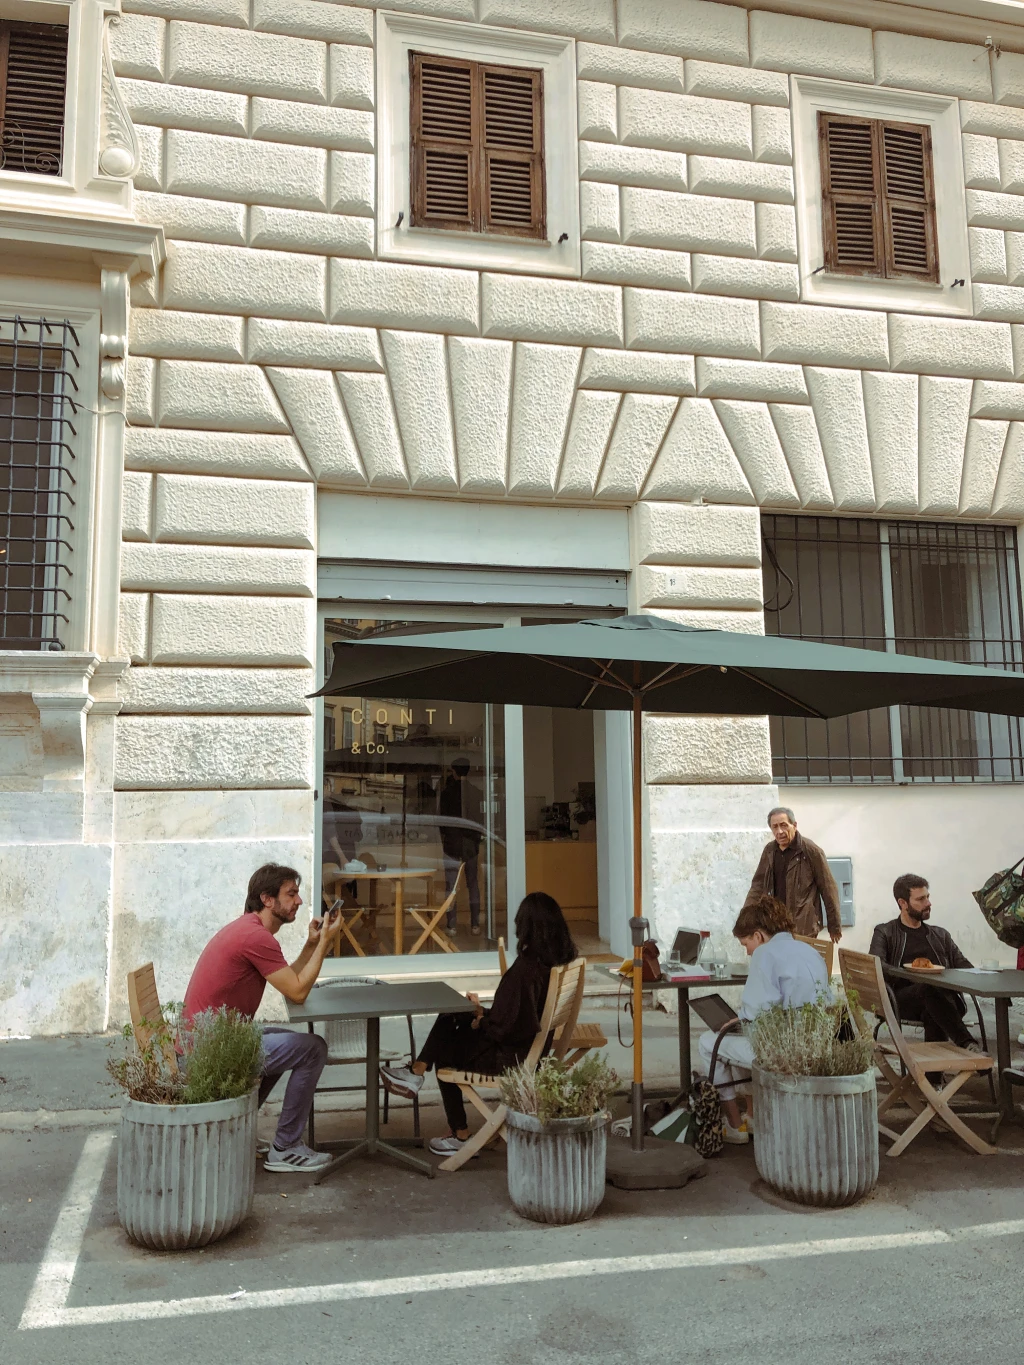 Bakery Forno Conti & Co, Esquilino, Rome